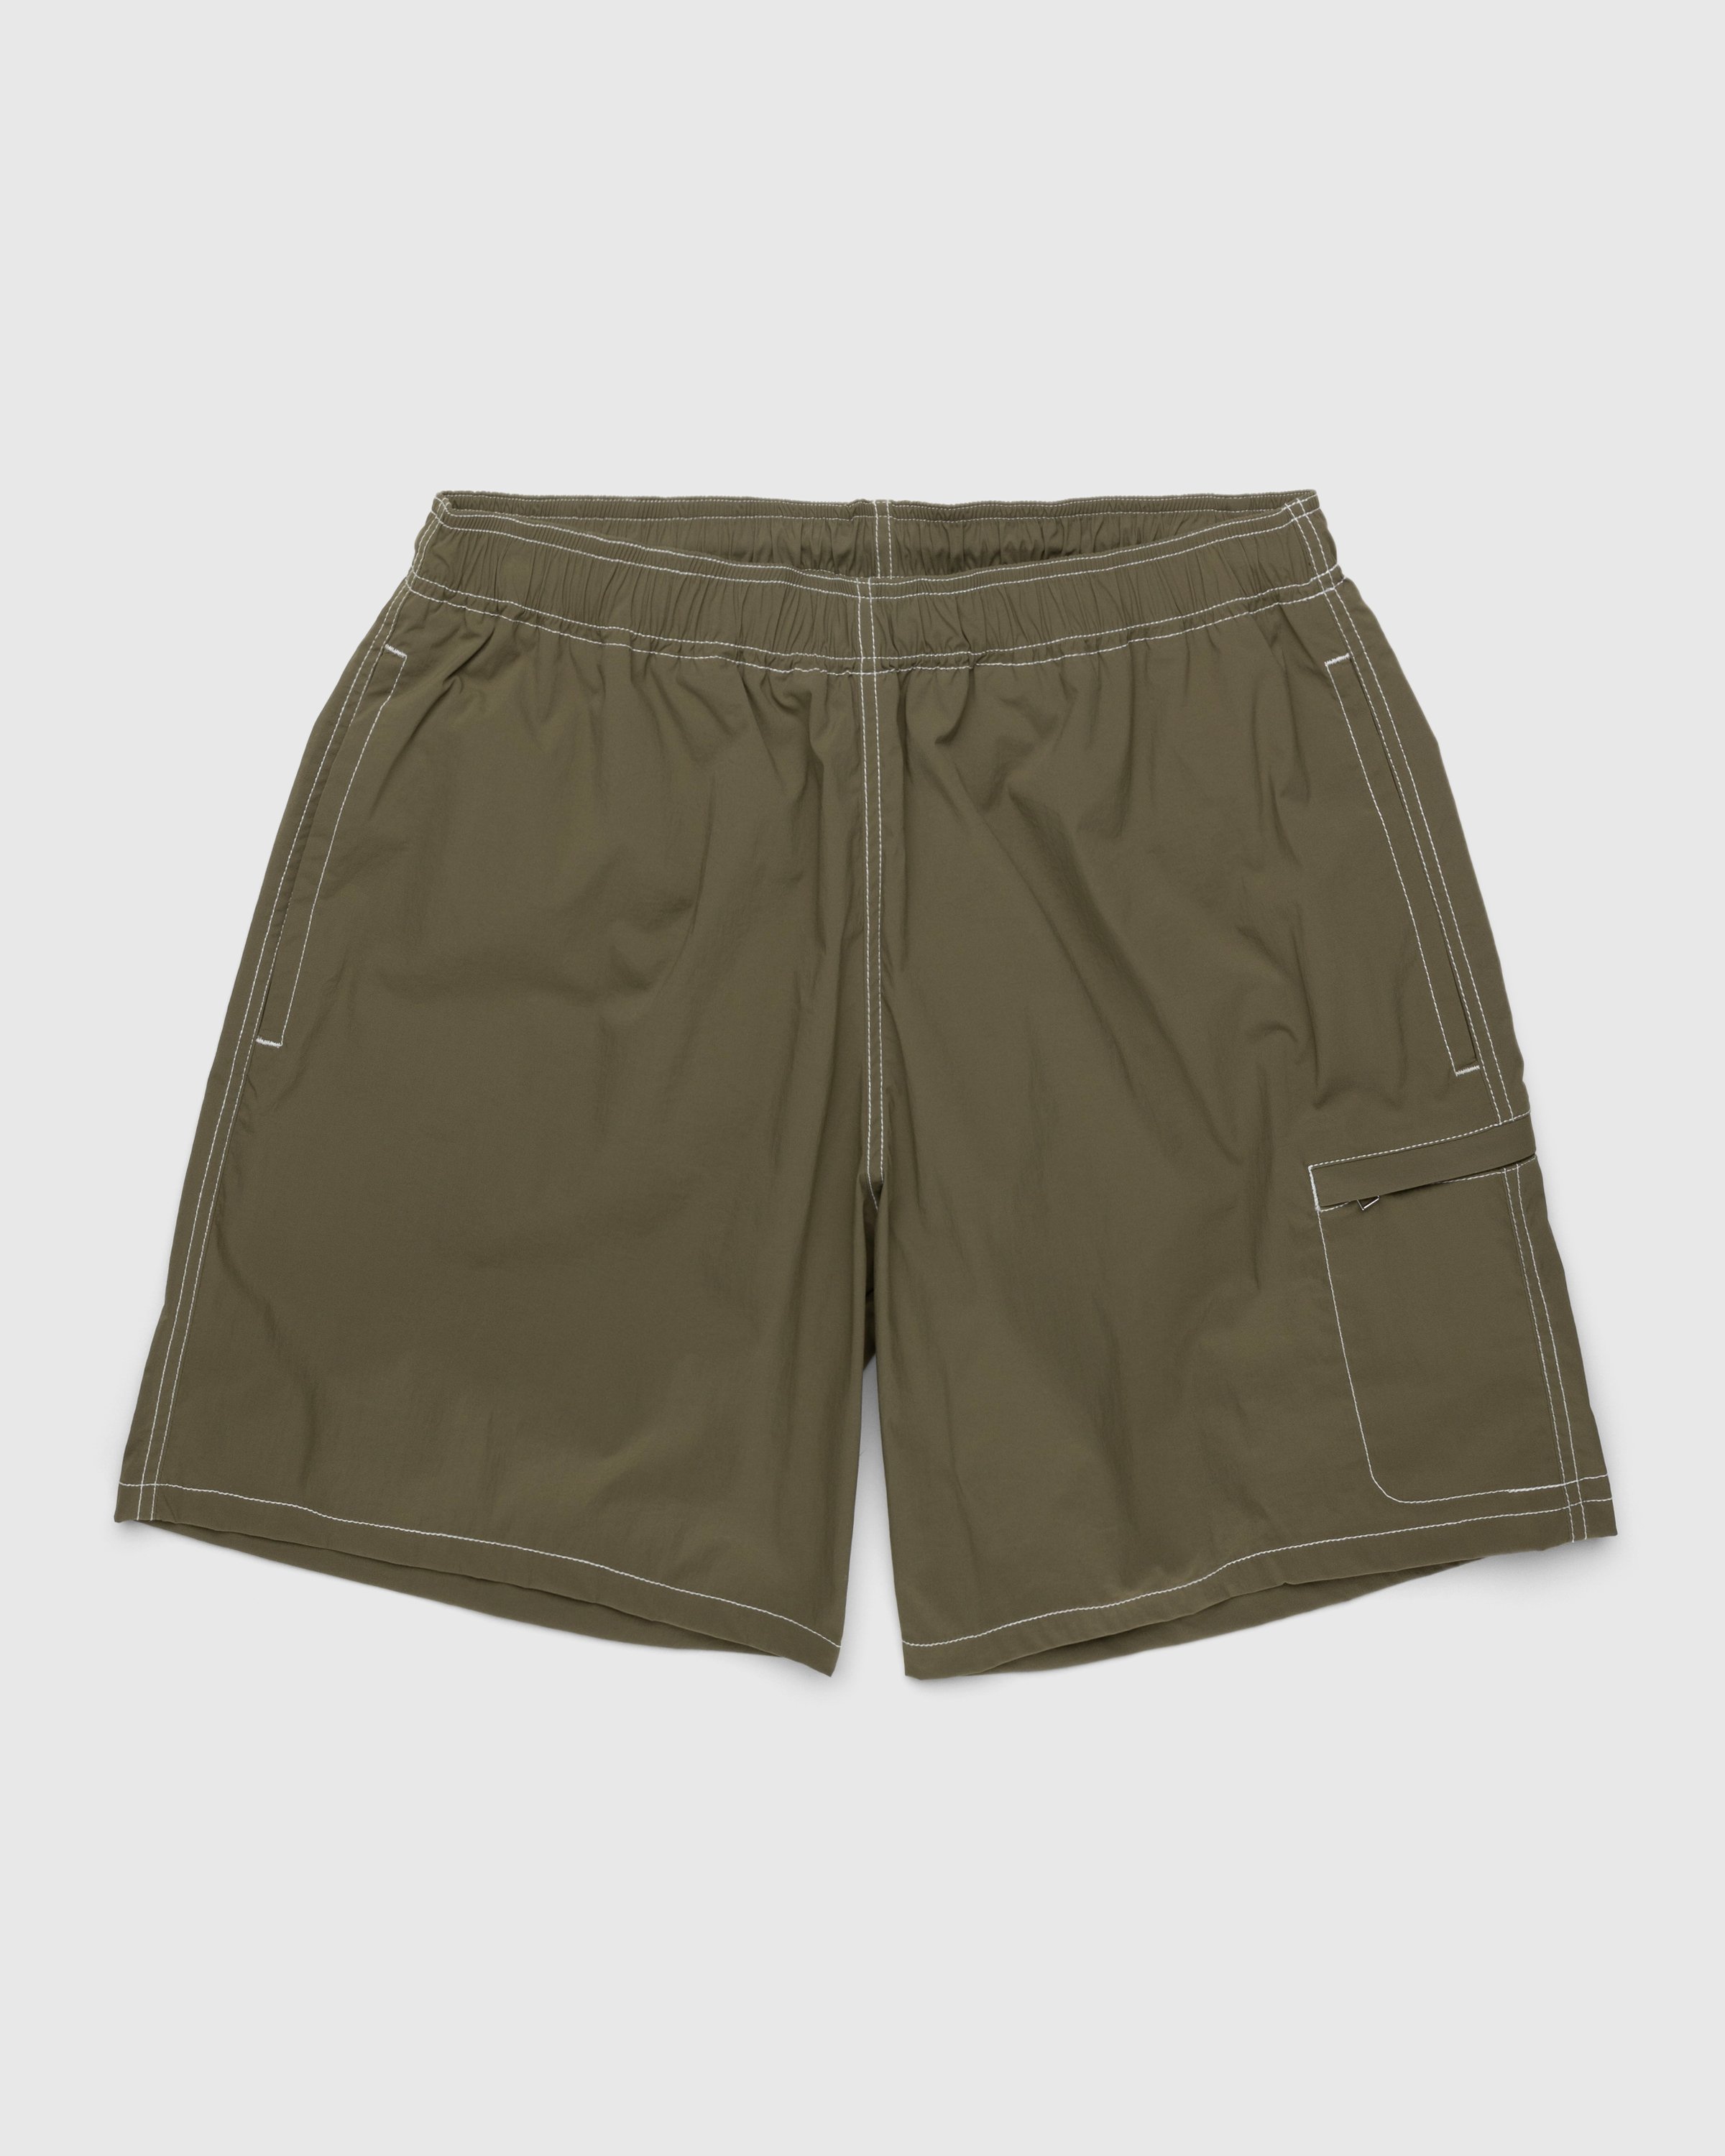 Highsnobiety - Side Cargo Shorts Khaki - Clothing - Green - Image 1